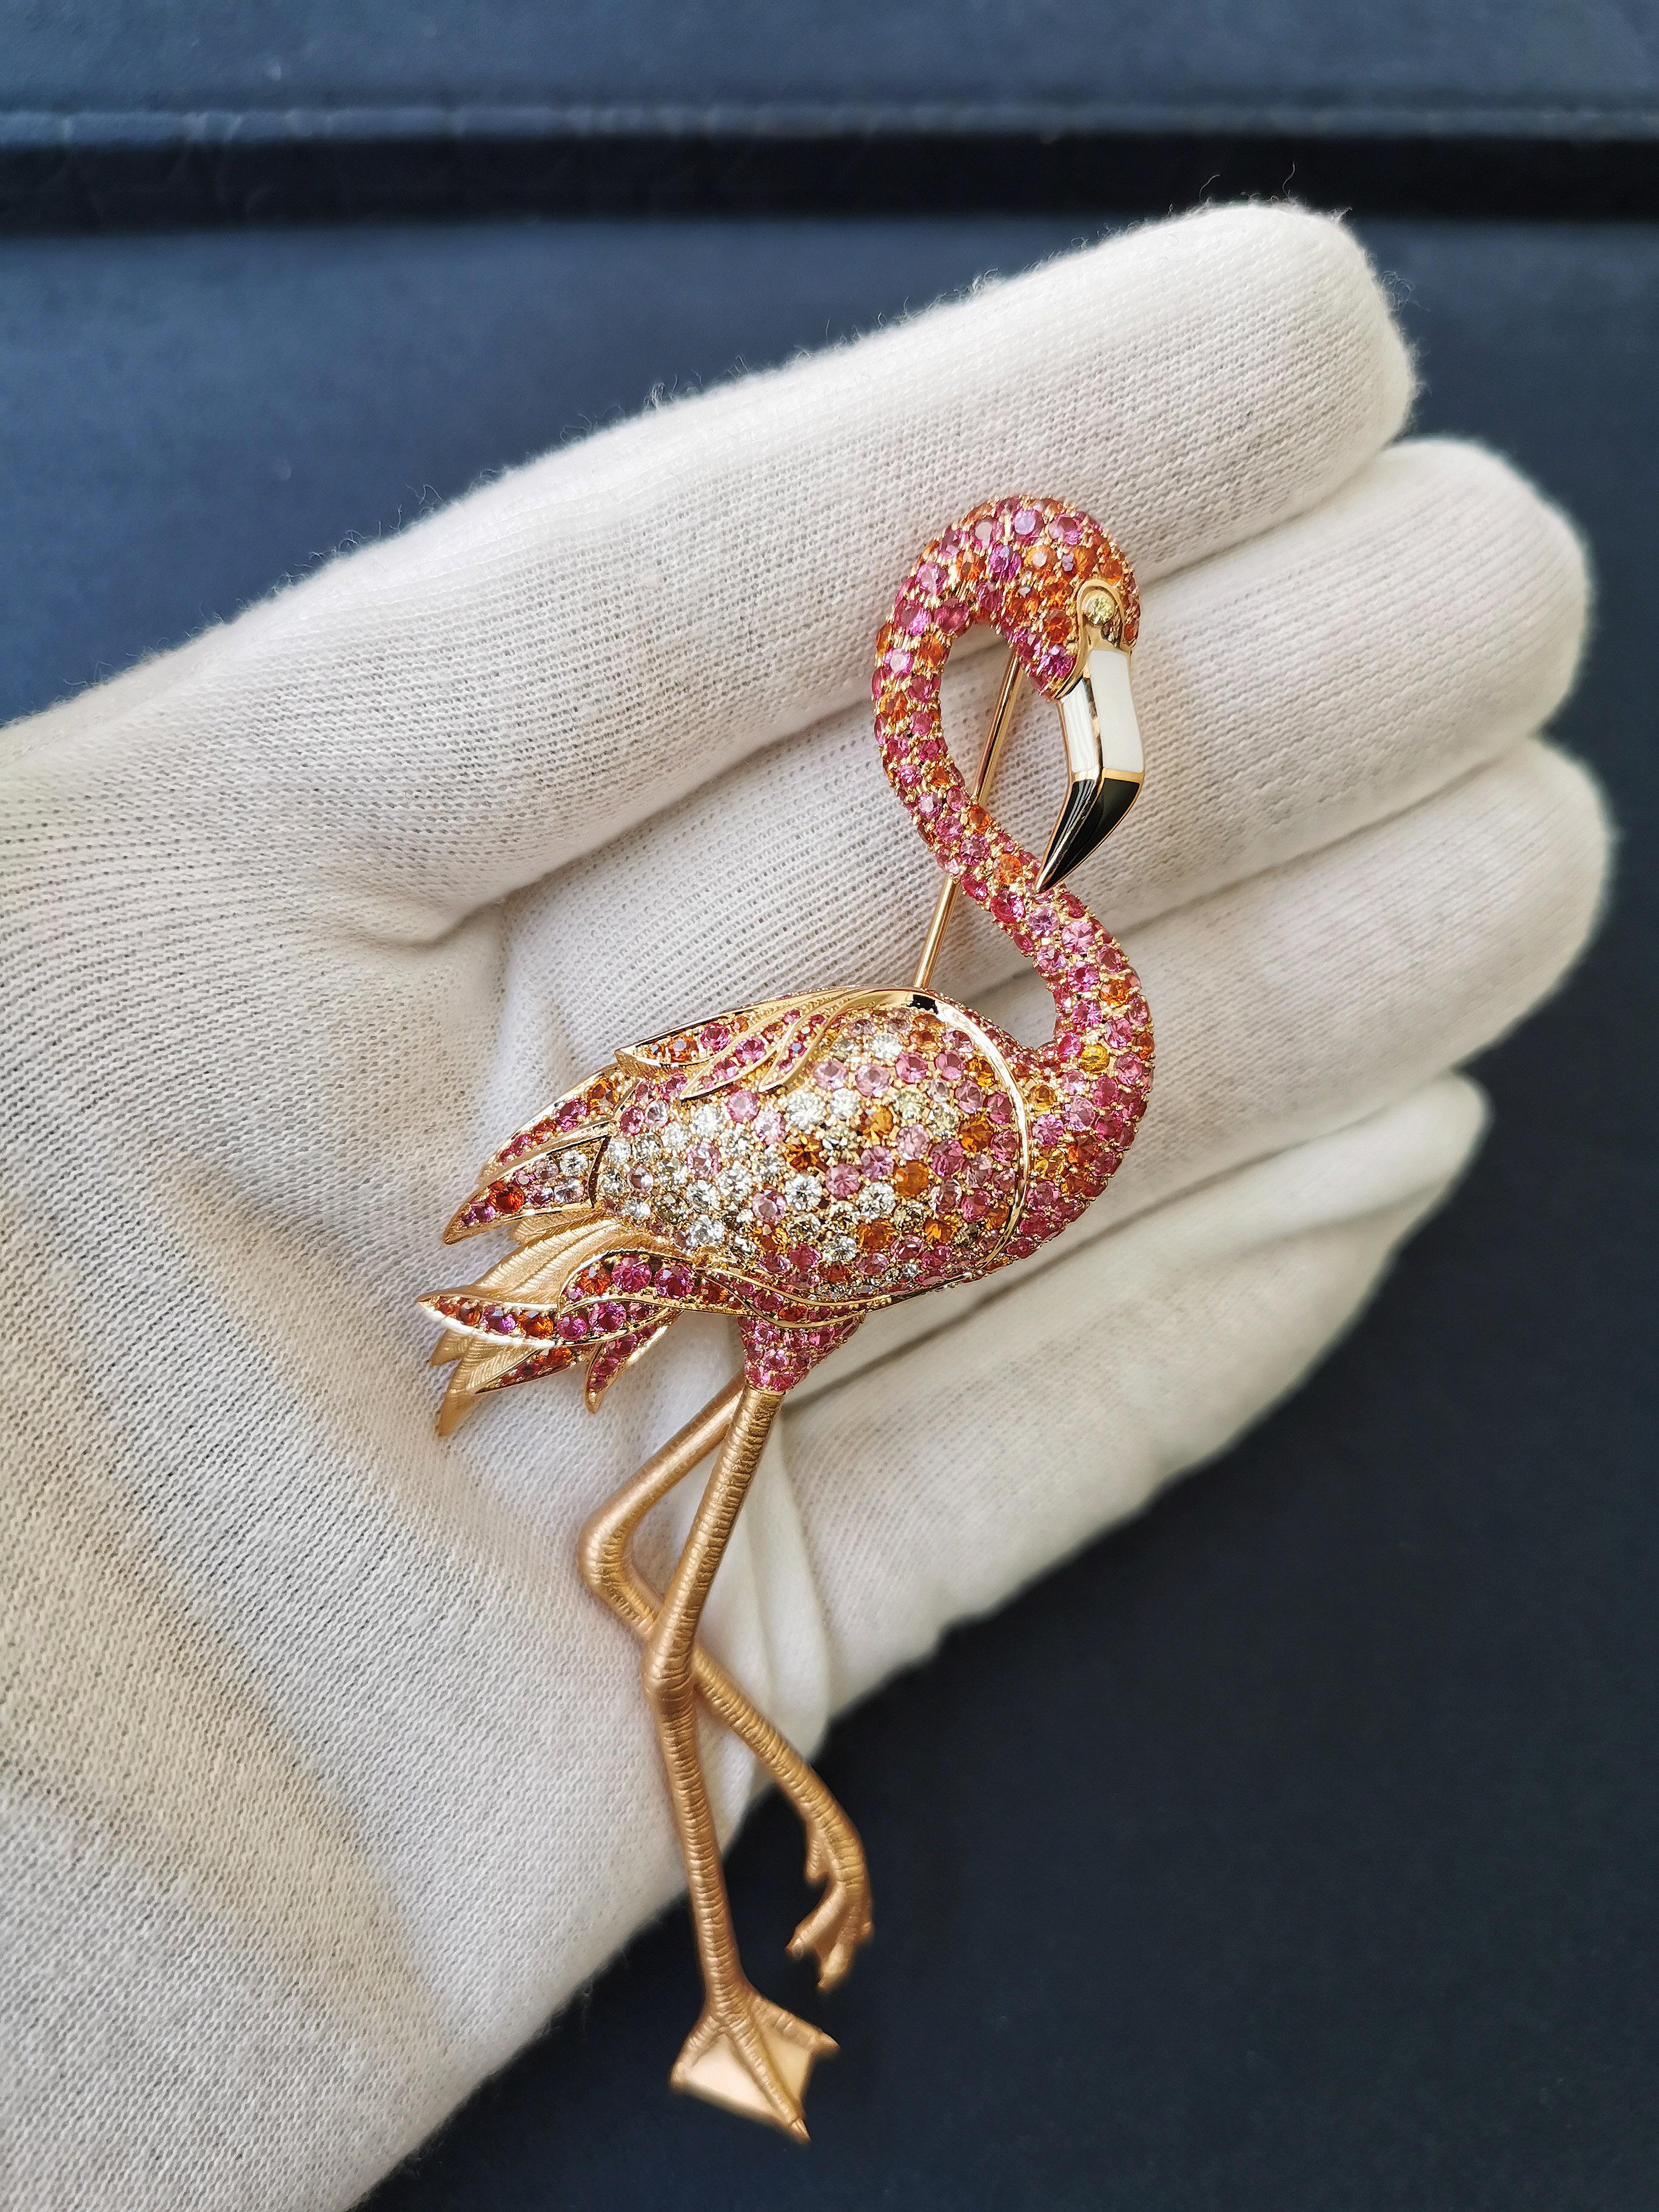 Broche flamingo en or rose 18 carats, diamants, saphirs roses orangés et émail
Nous avons décidé de représenter l'un des plus beaux oiseaux de la planète : le flamant rose. L'oiseau est en or rose 18 carats. Les pattes sont rendues si réalistes que